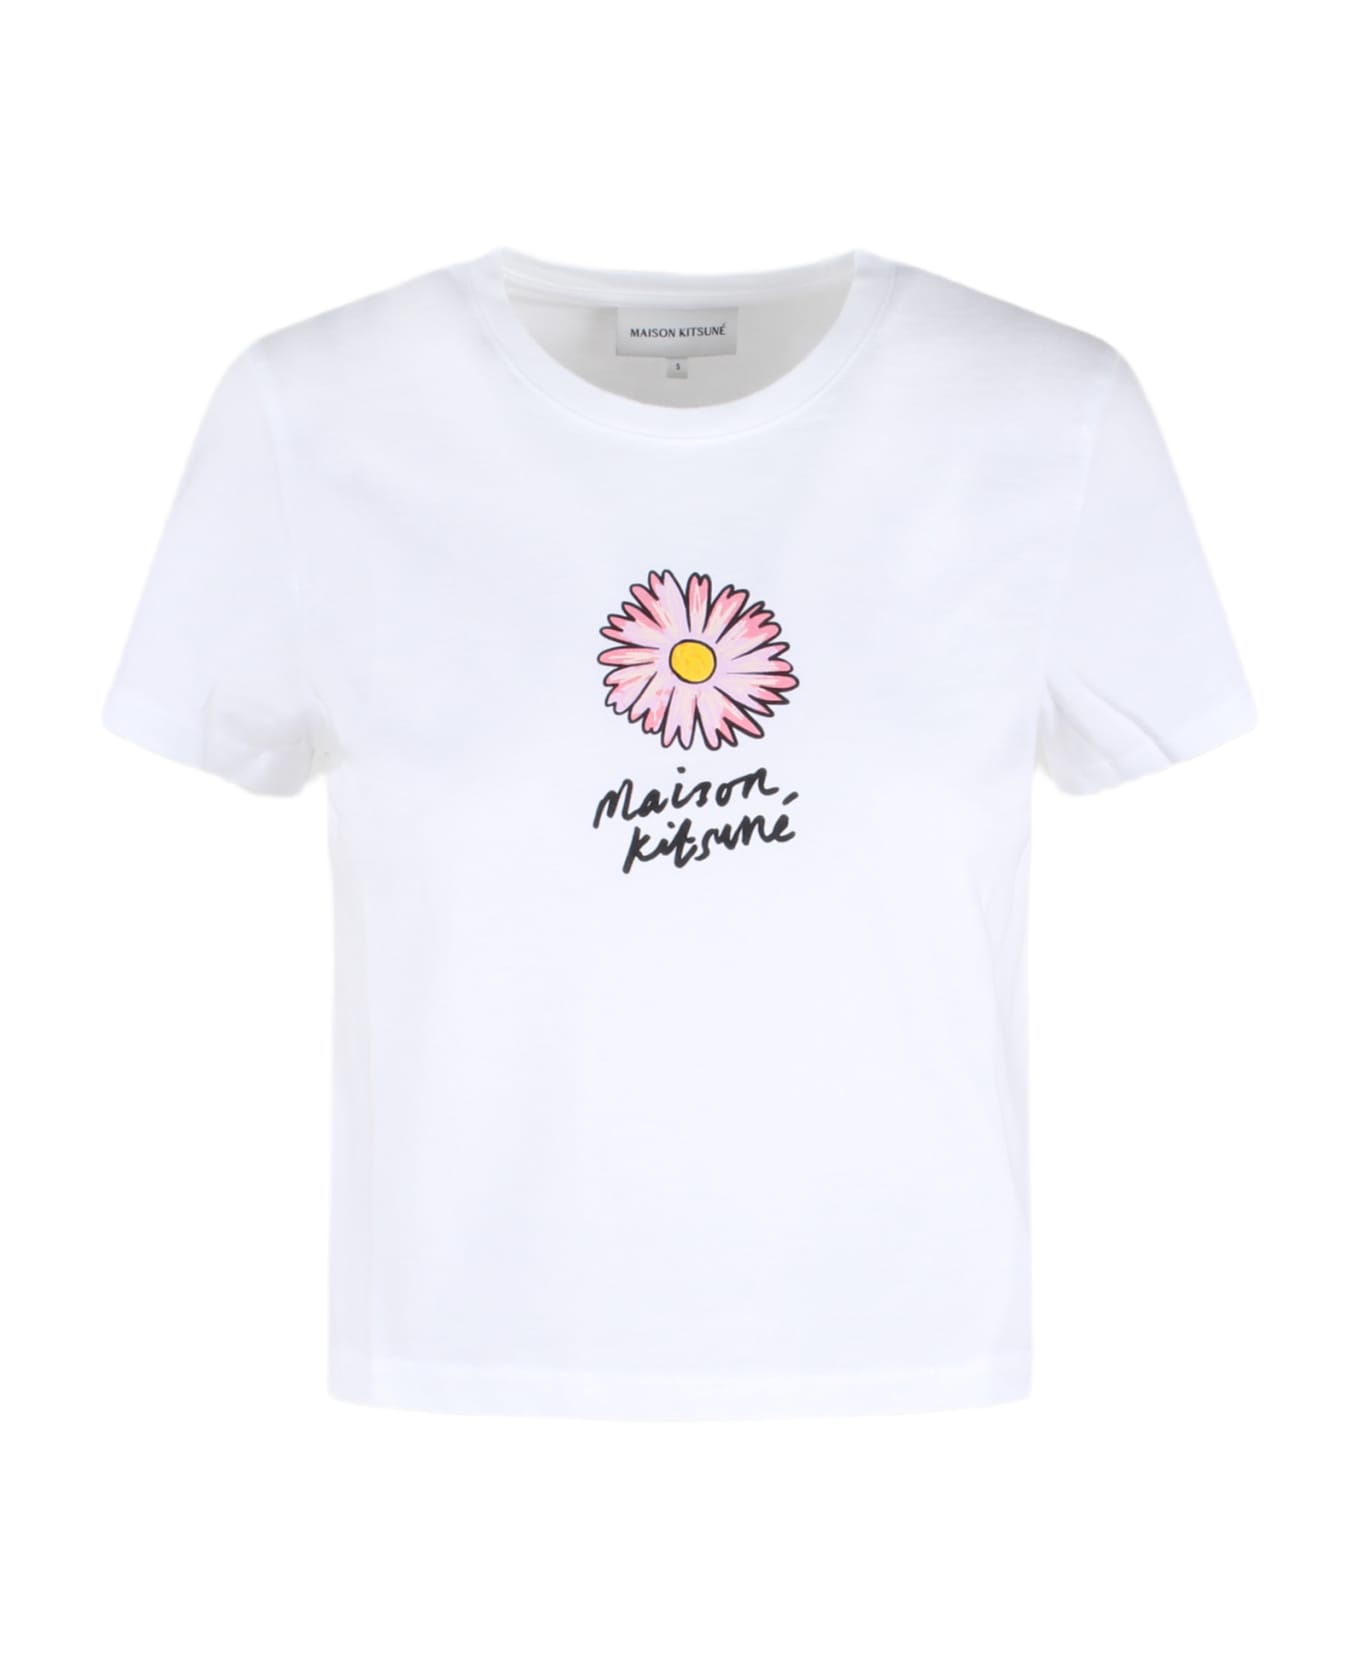 Maison Kitsuné Floating Flower Baby T-shirt - White Tシャツ